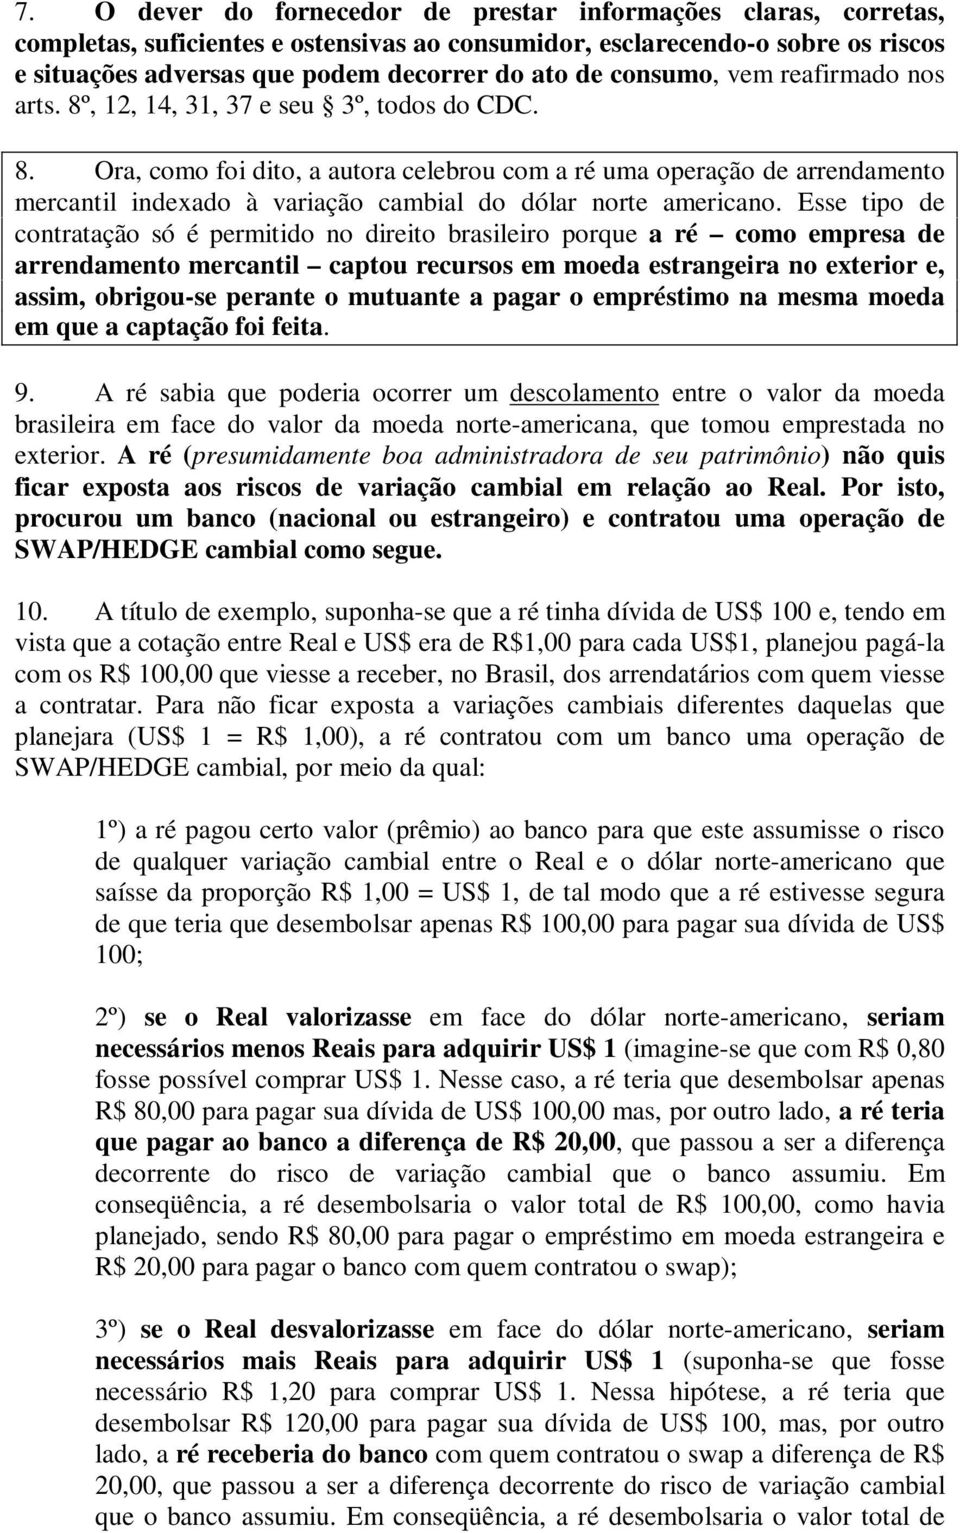 Esse tipo de contratação só é permitido no direito brasileiro porque a ré como empresa de arrendamento mercantil captou recursos em moeda estrangeira no exterior e, assim, obrigou-se perante o